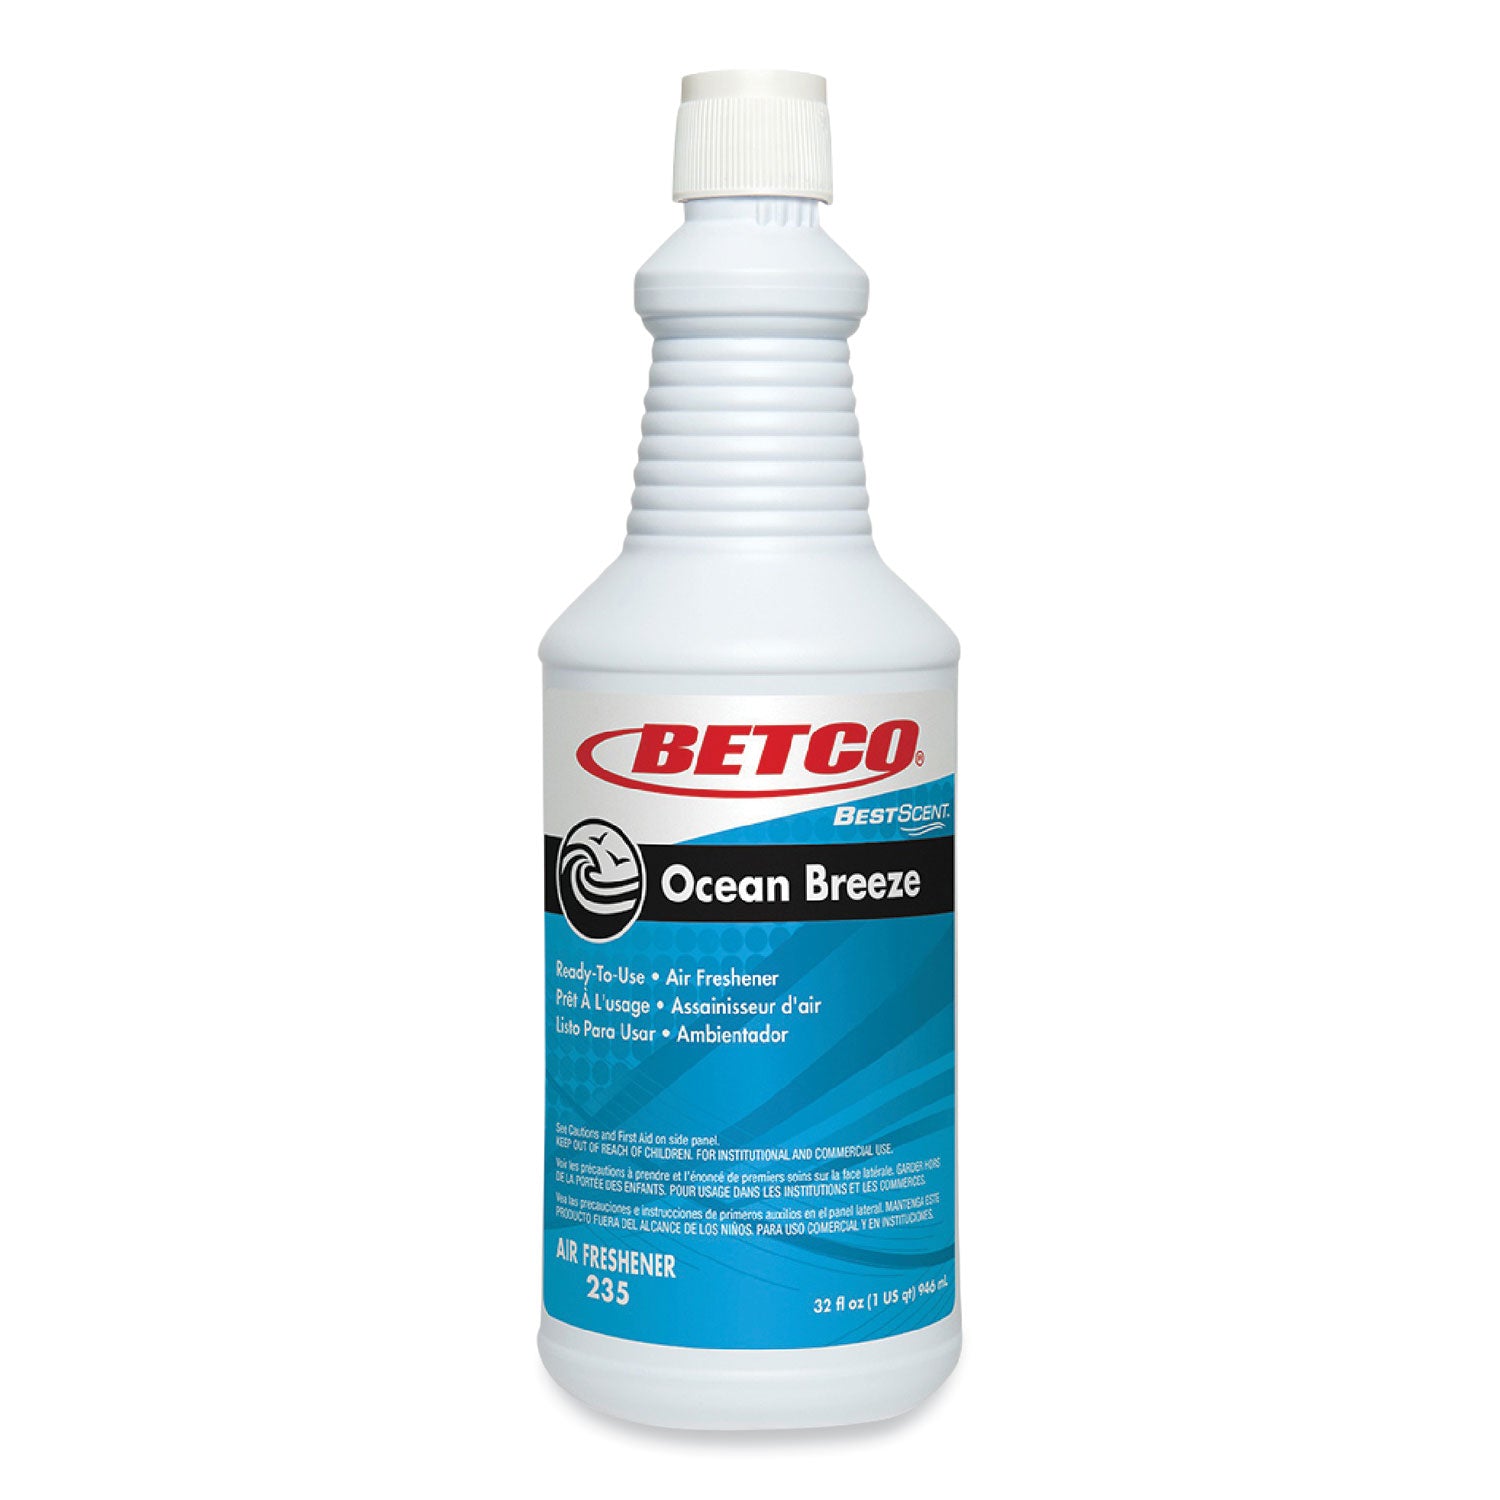 bestscent-ocean-breeze-rtu-deodorizer-ocean-breeze-scent-32-oz-spray-bottle-12-carton_bet2351200 - 1